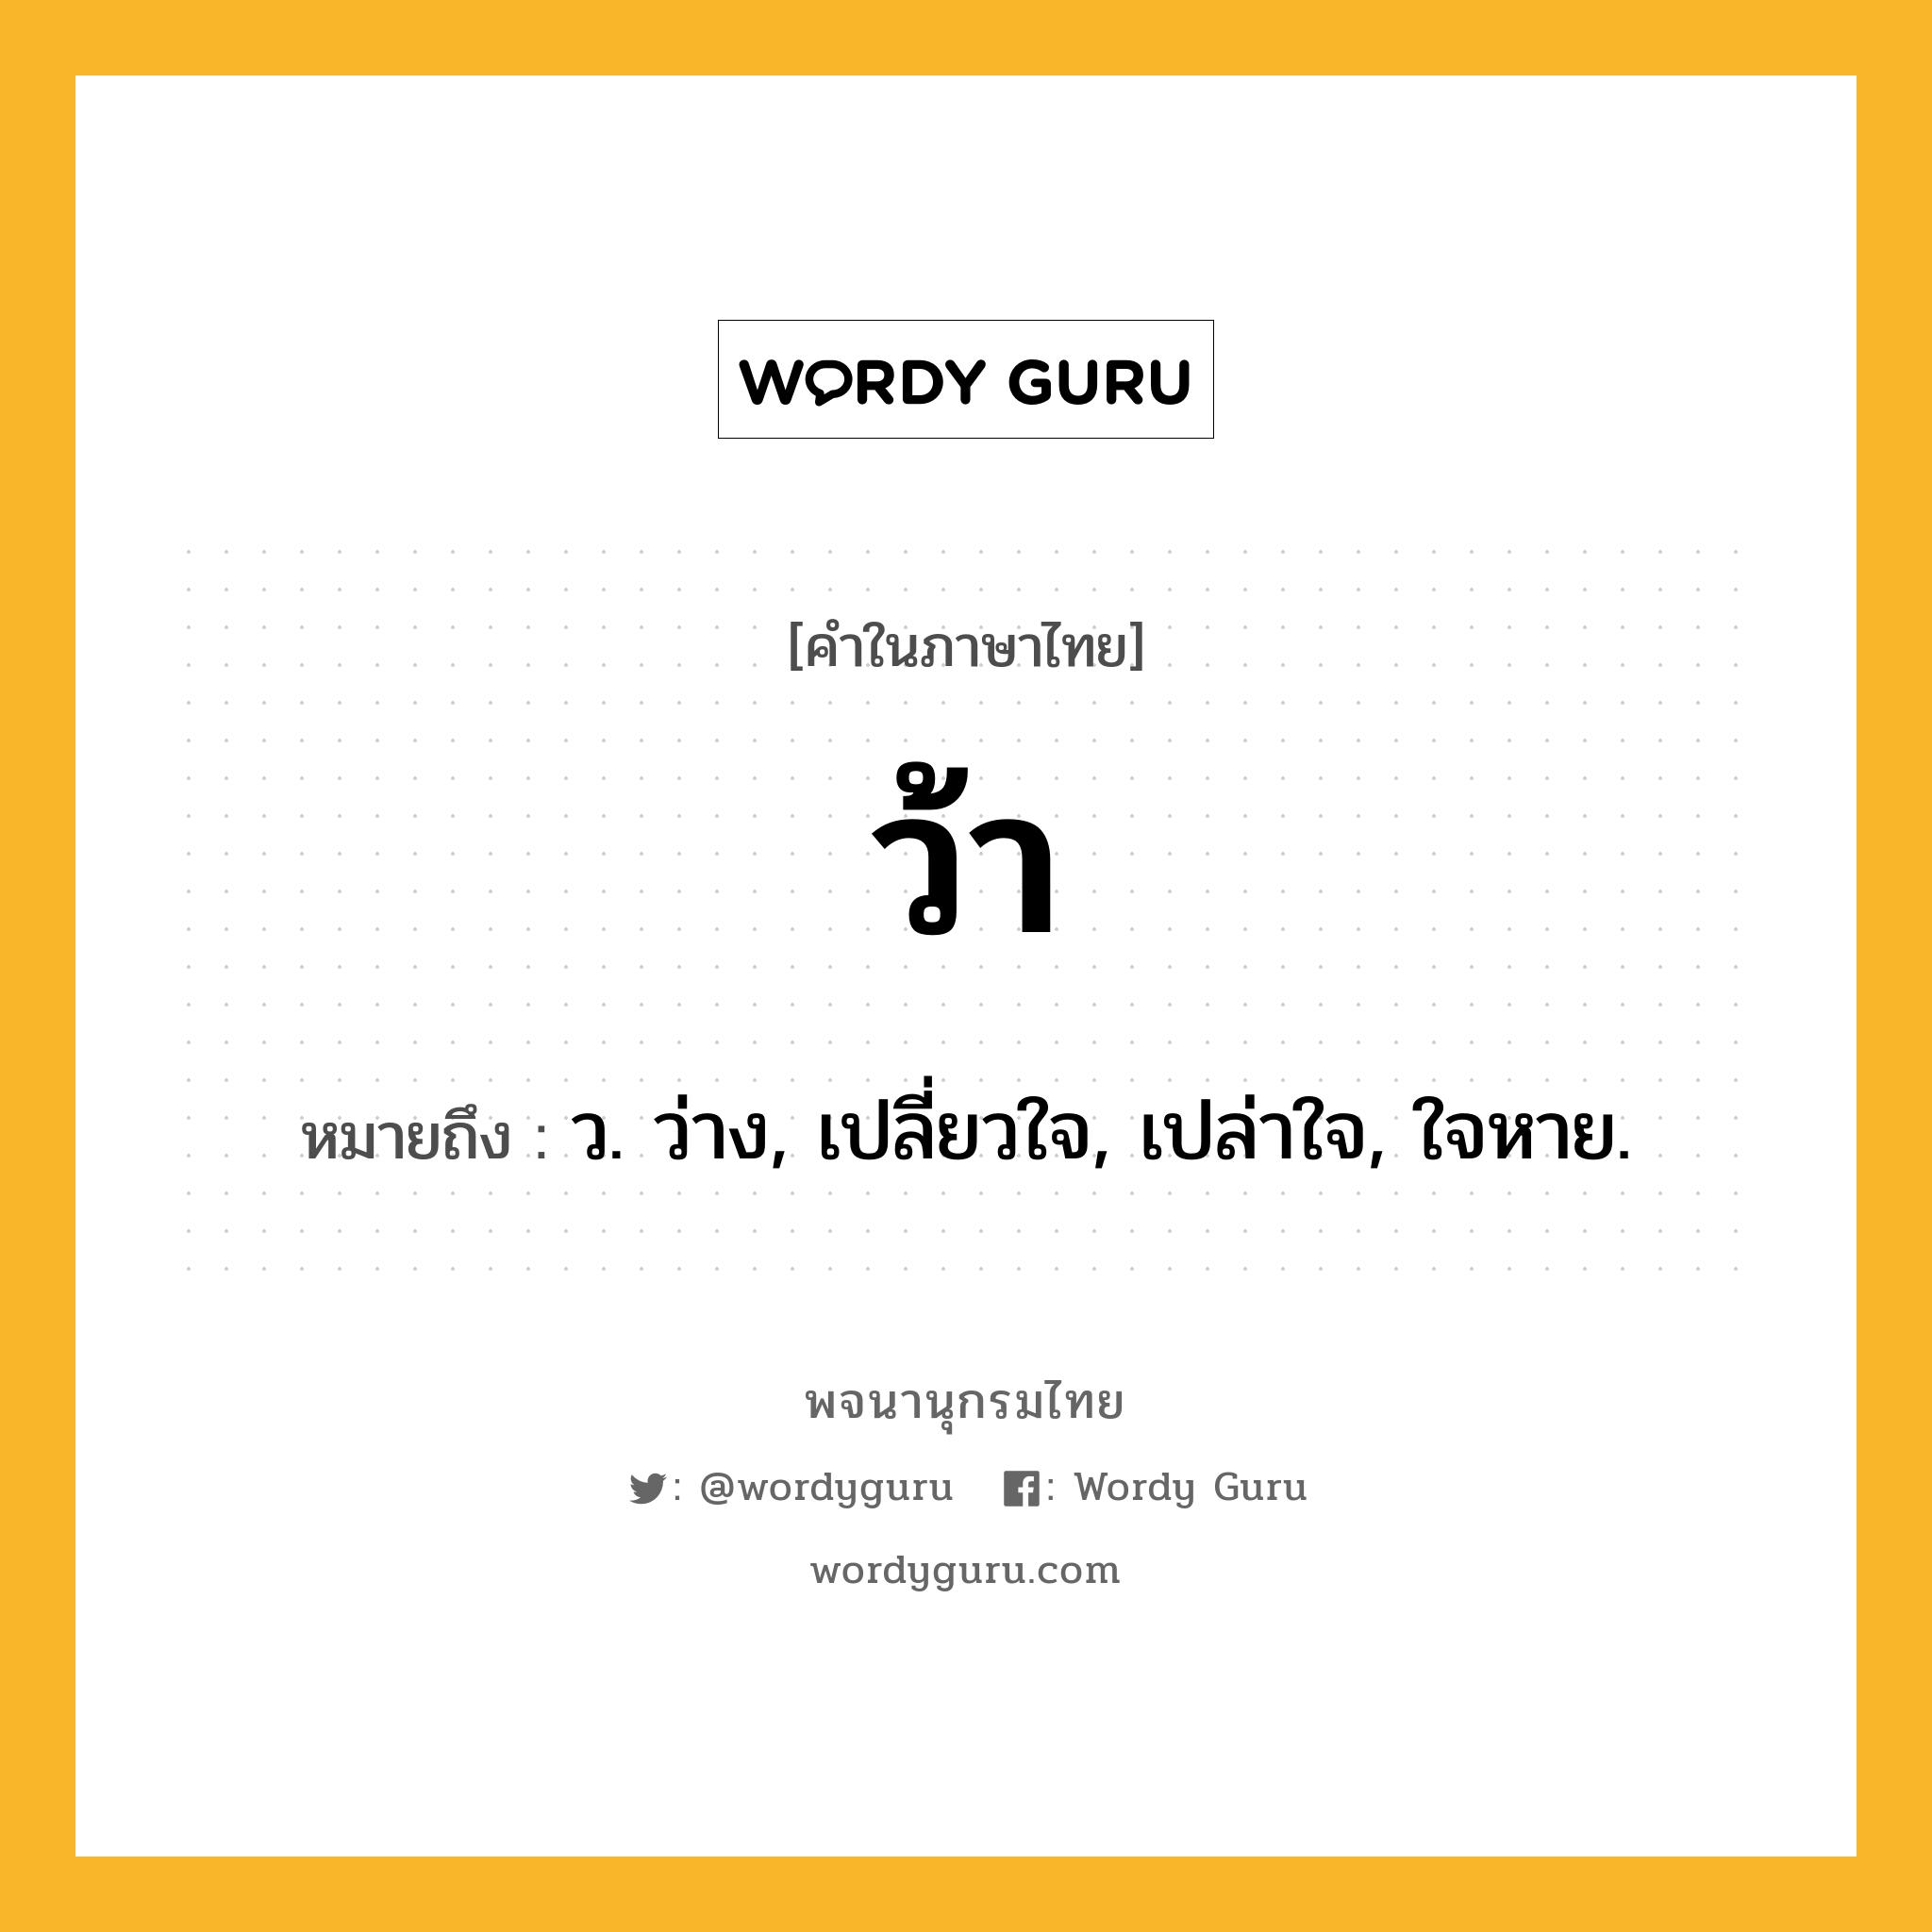 ว้า ความหมาย หมายถึงอะไร?, คำในภาษาไทย ว้า หมายถึง ว. ว่าง, เปลี่ยวใจ, เปล่าใจ, ใจหาย.